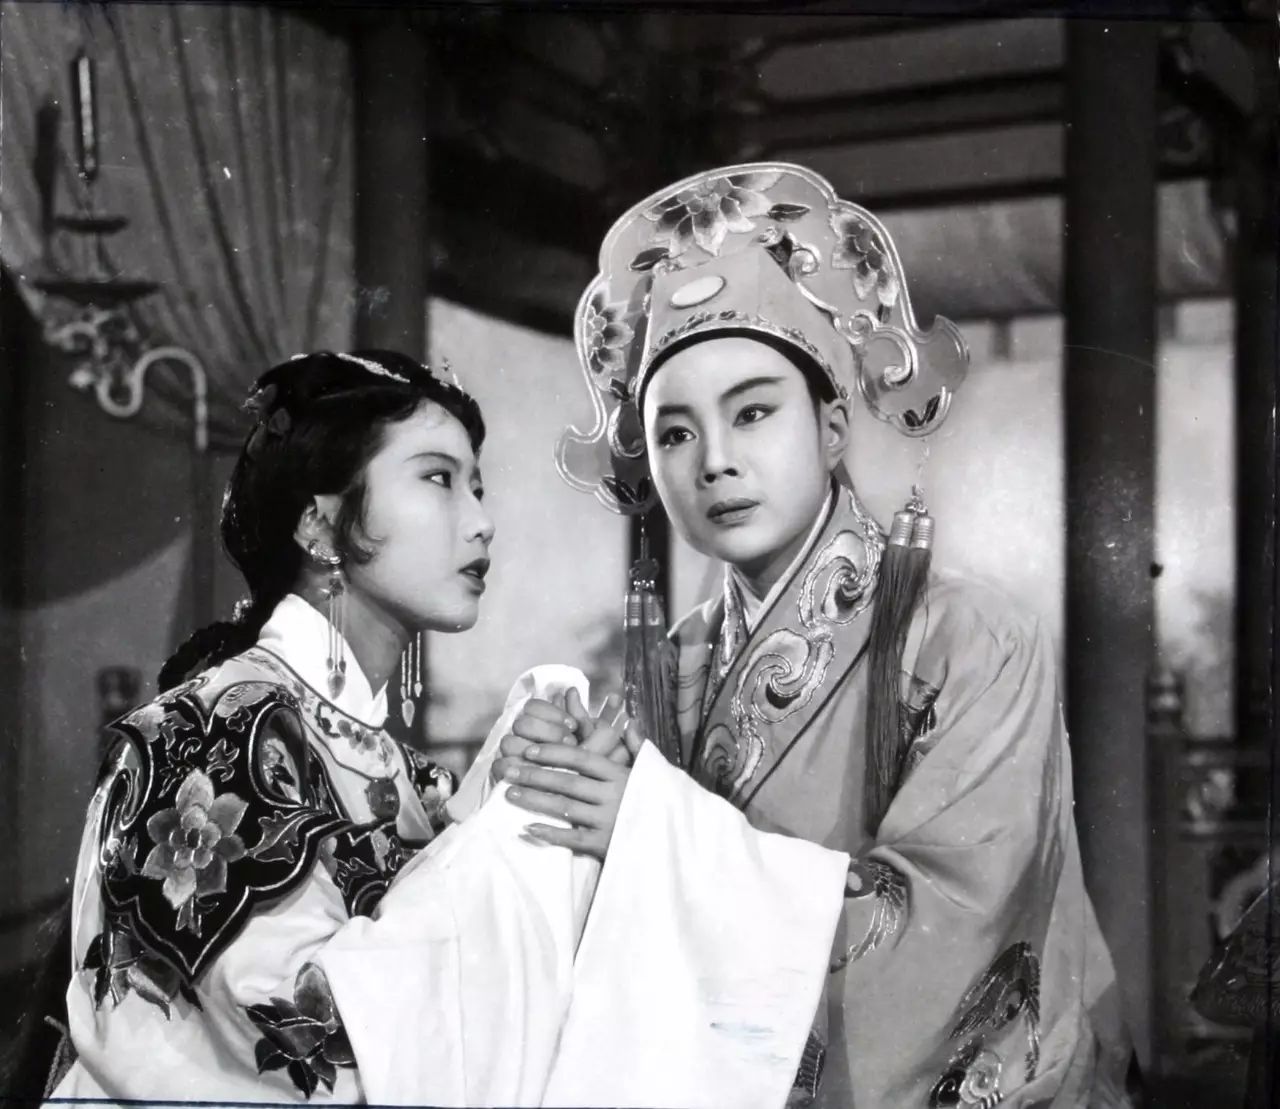 越剧电影《梁山伯与祝英台》(1954年)范瑞娟饰梁山伯